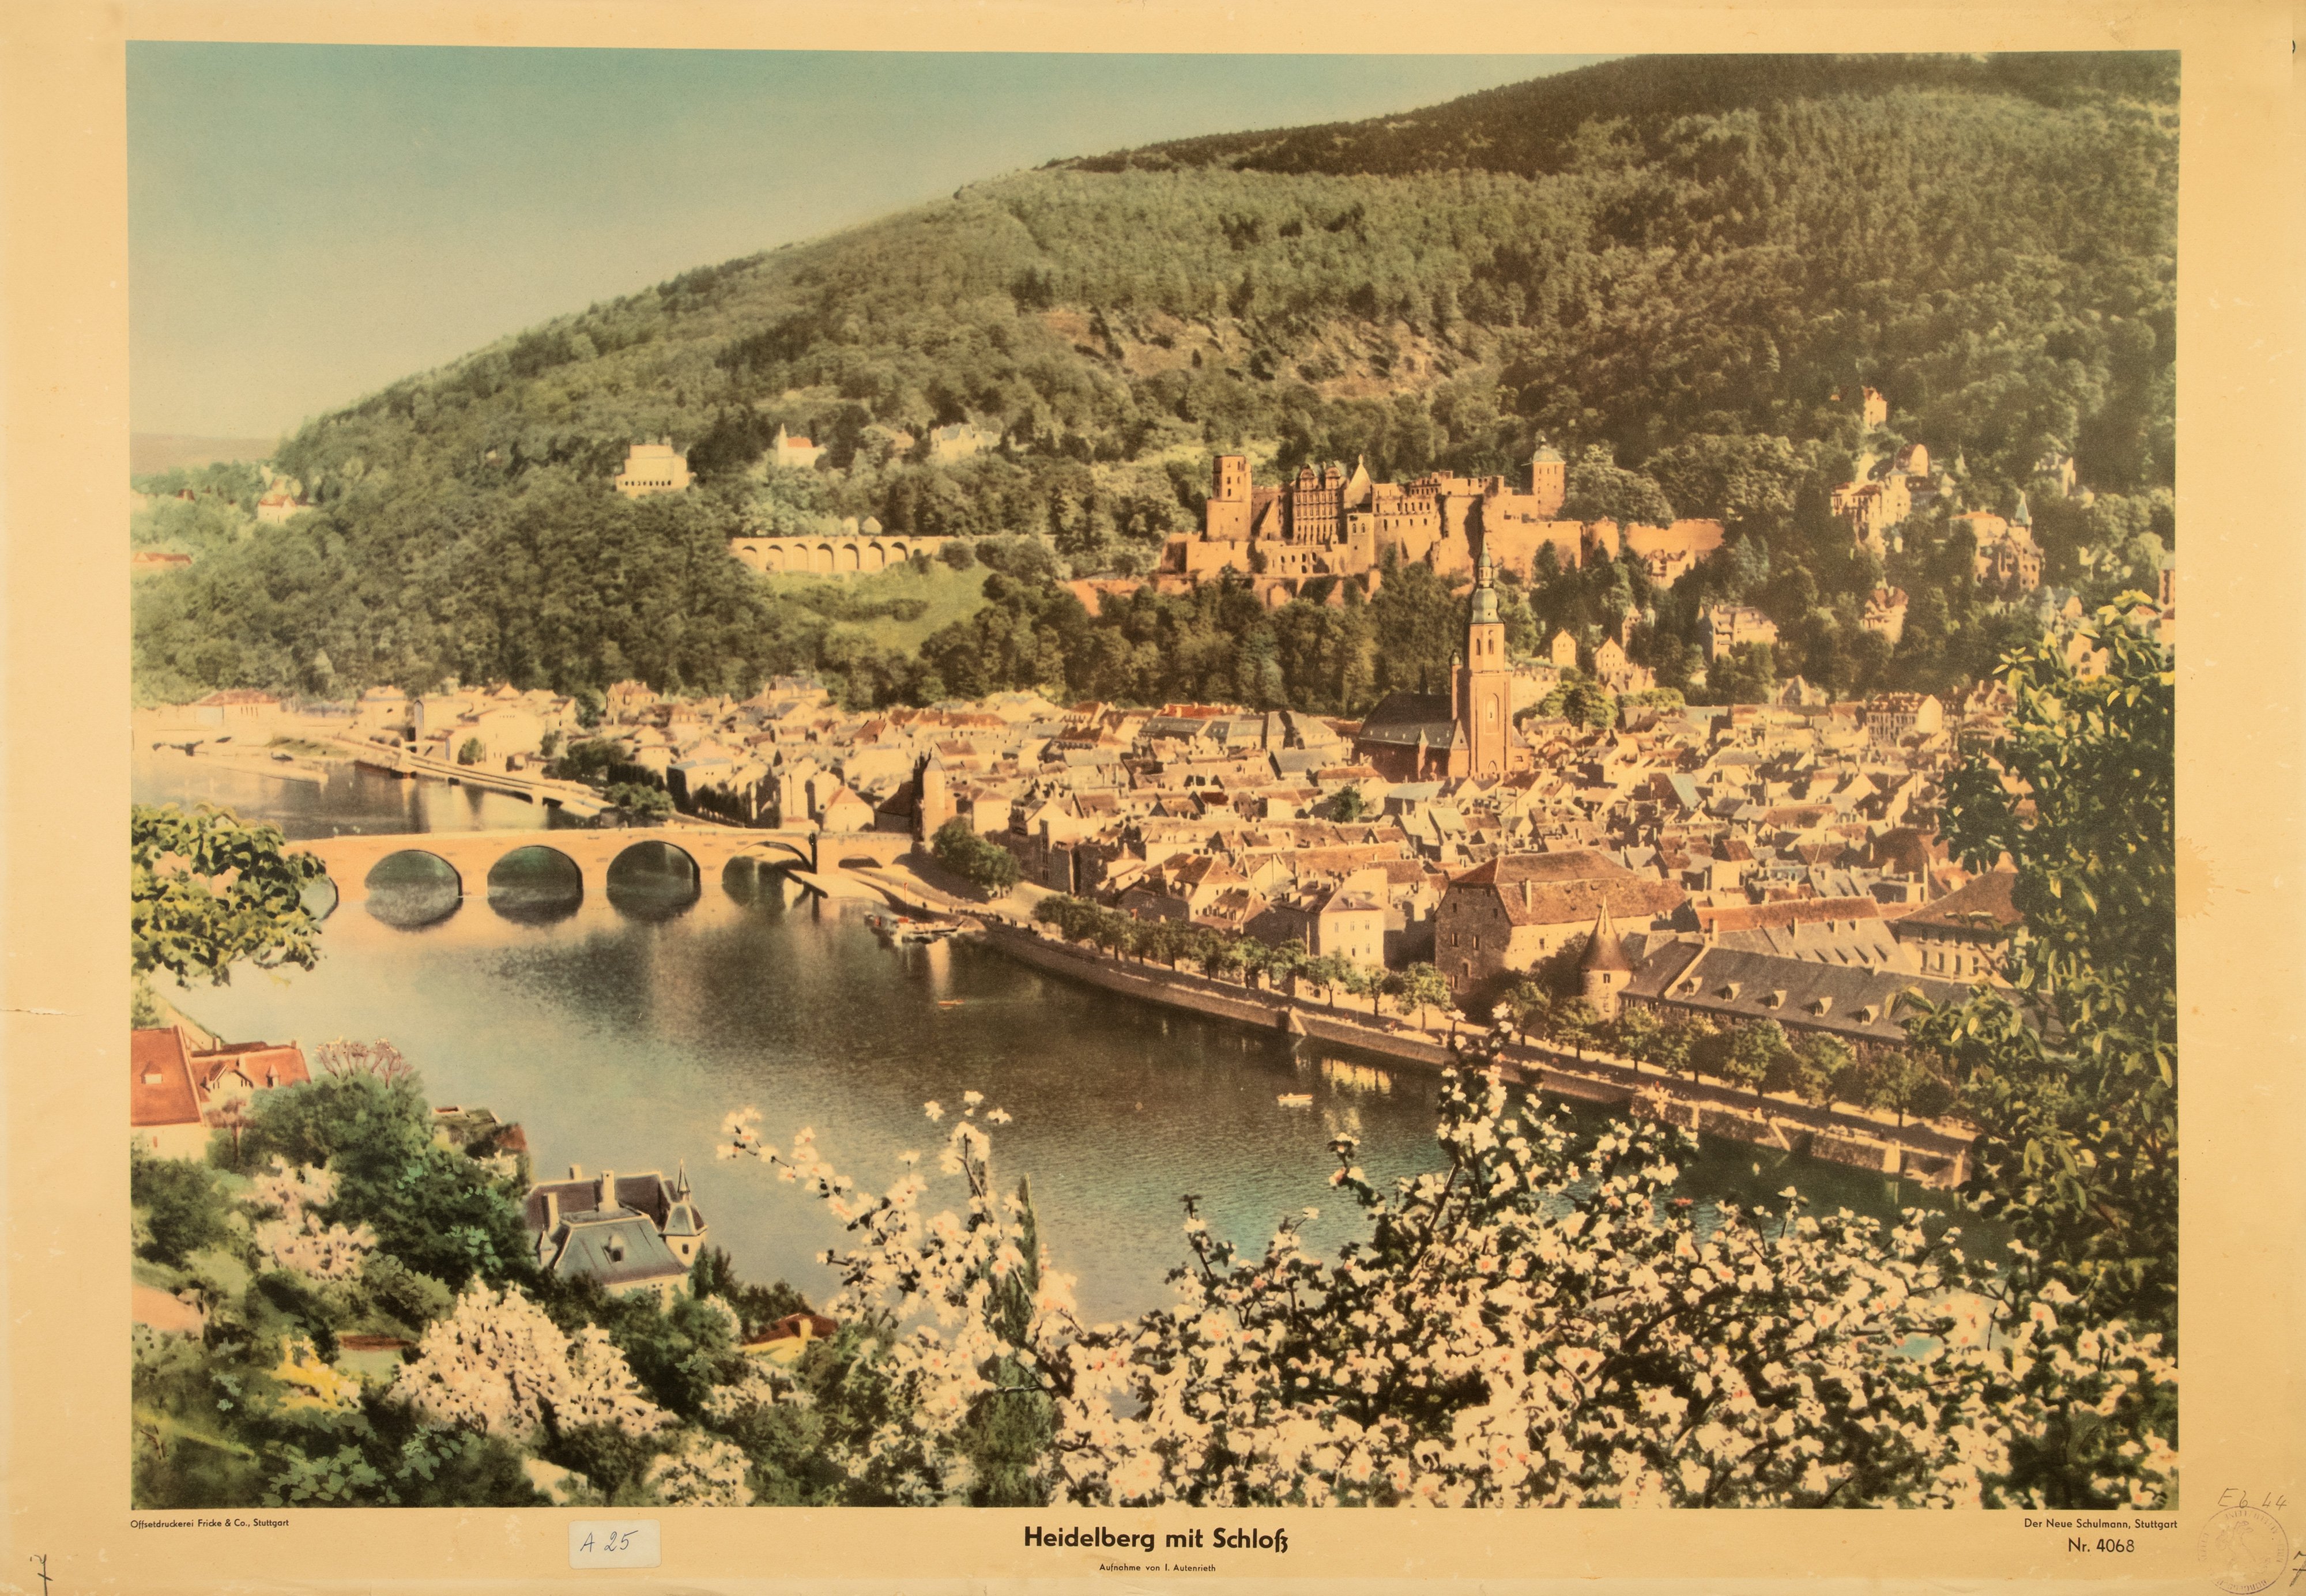 Eine Aufnahme von Heidelberg mit Schloss (Stiftung Schulmuseum der Universität Hildesheim CC BY-SA)